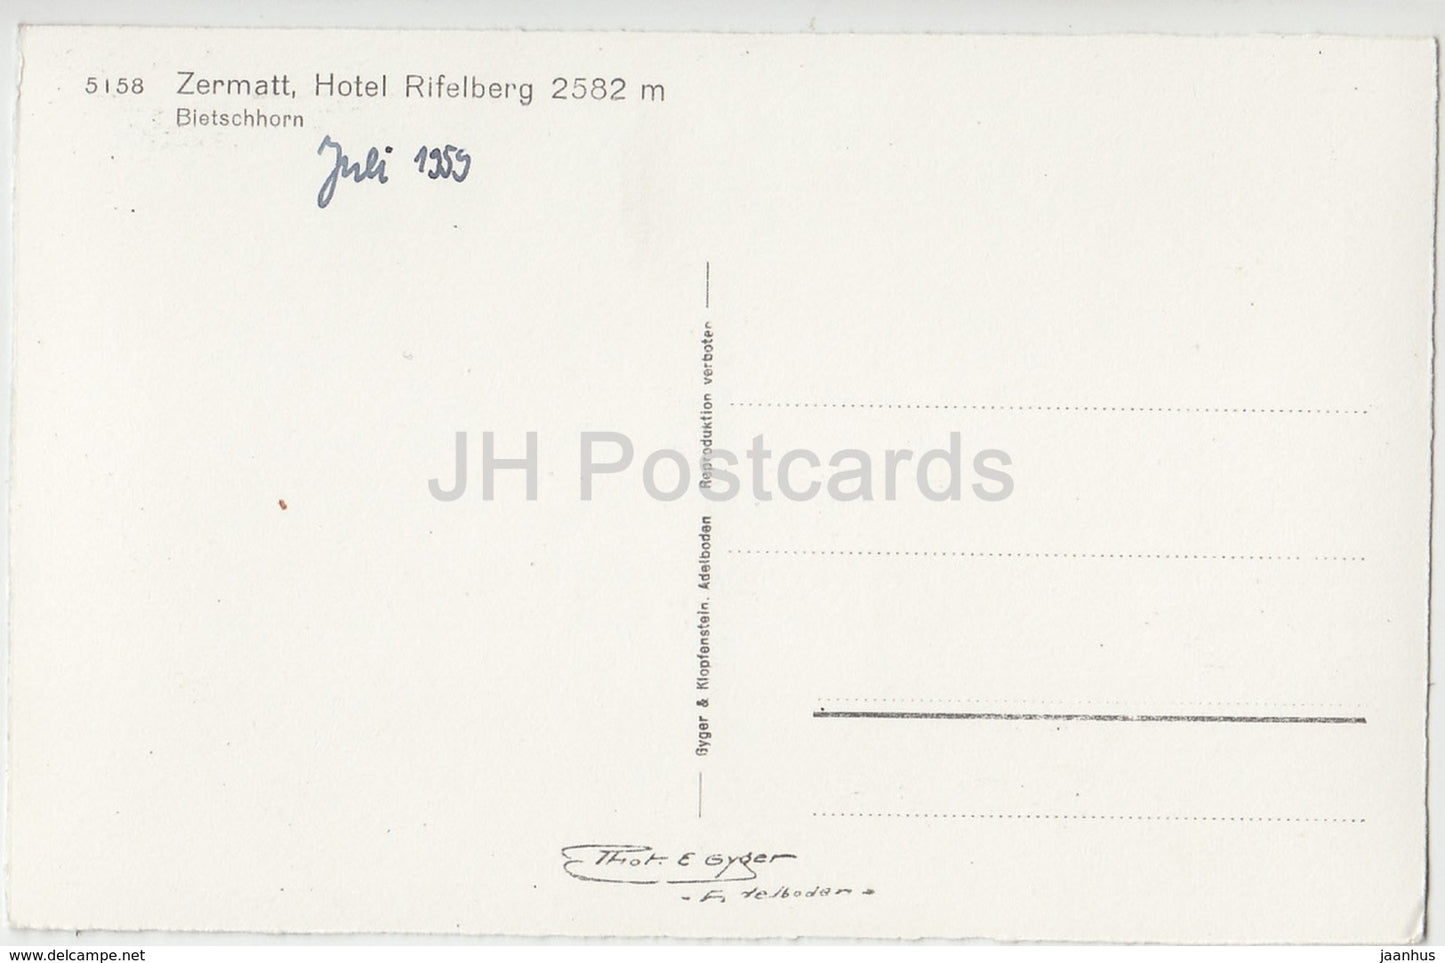 Zermatt - hotel Rifelberg 2582 m - Bietschhorn - Riffelhaus - 5158 - Switzerland - old postcard - unused